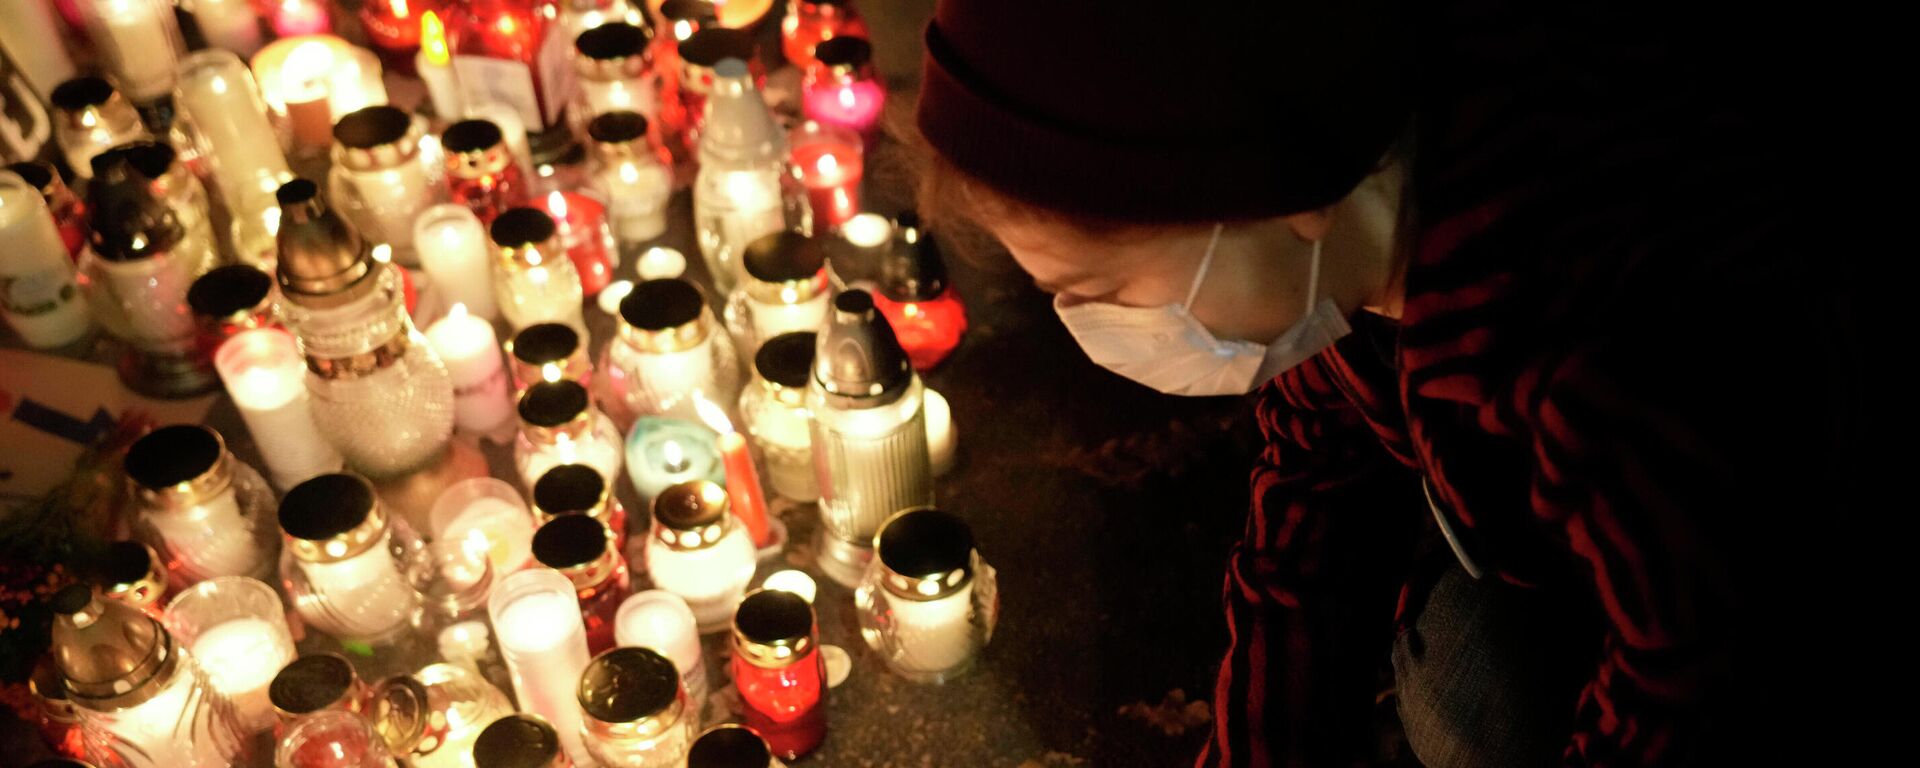 Žmonės uždega žvakutes 22-ąją nėštumo savaitę Lenkijoje mirusios moters atminimui - Sputnik Lietuva, 1920, 03.11.2021